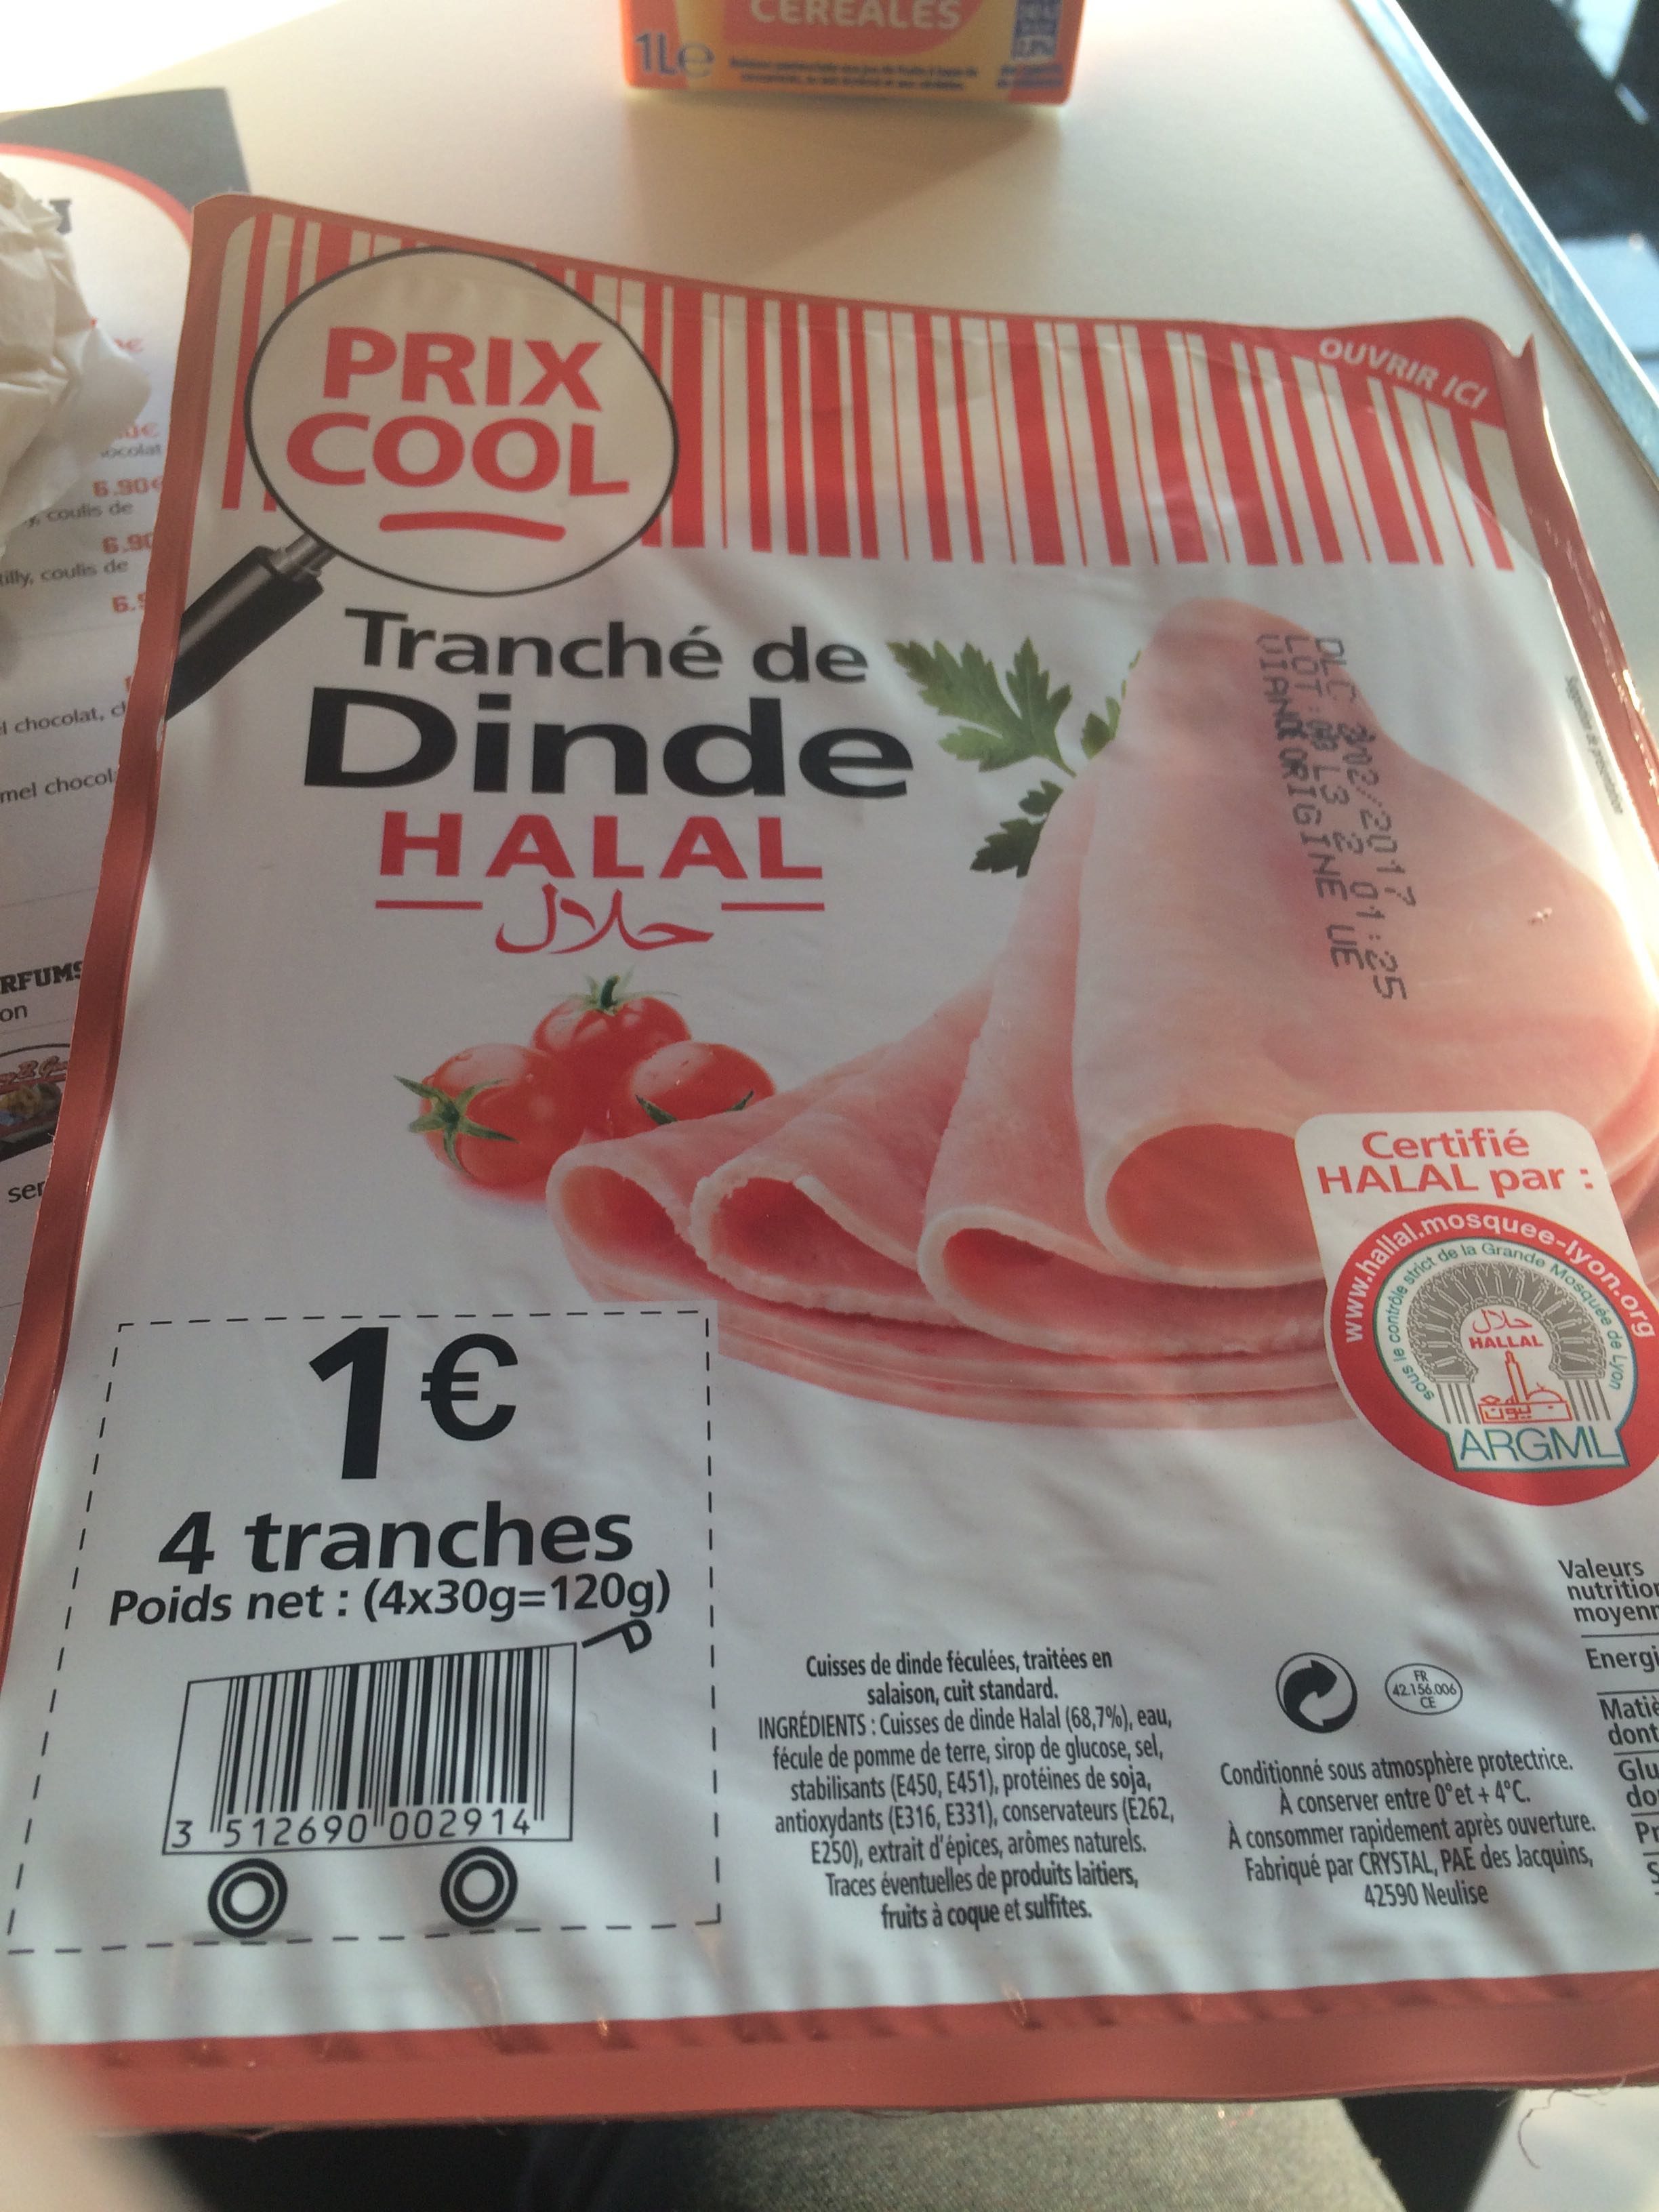 Tranché de dinde Halal - Product - fr